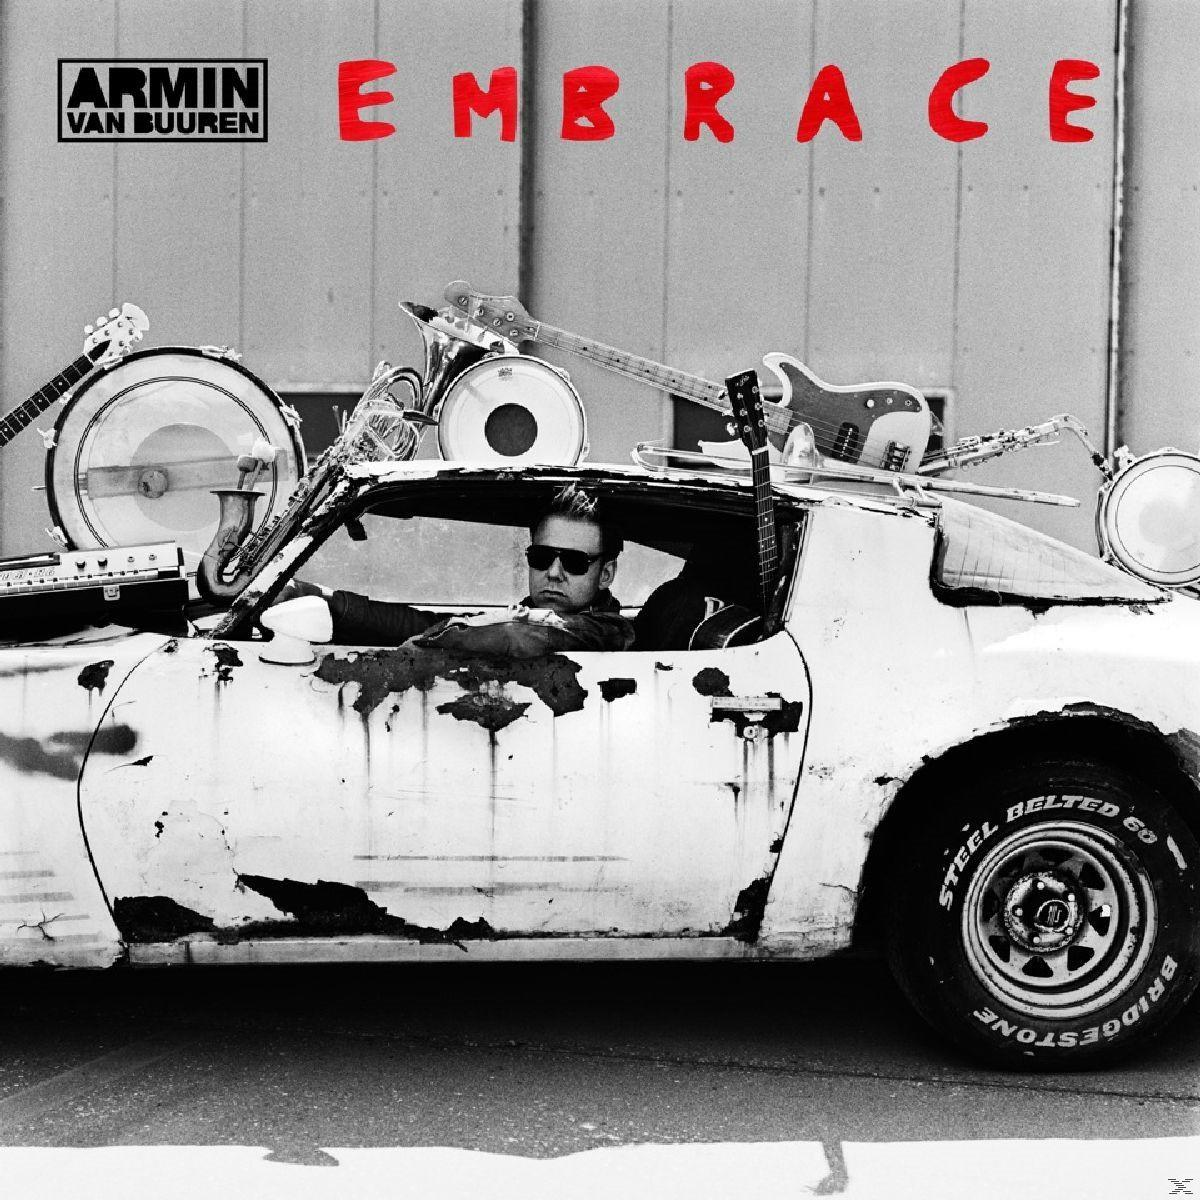 (CD) Van Armin Embrace - Buuren -